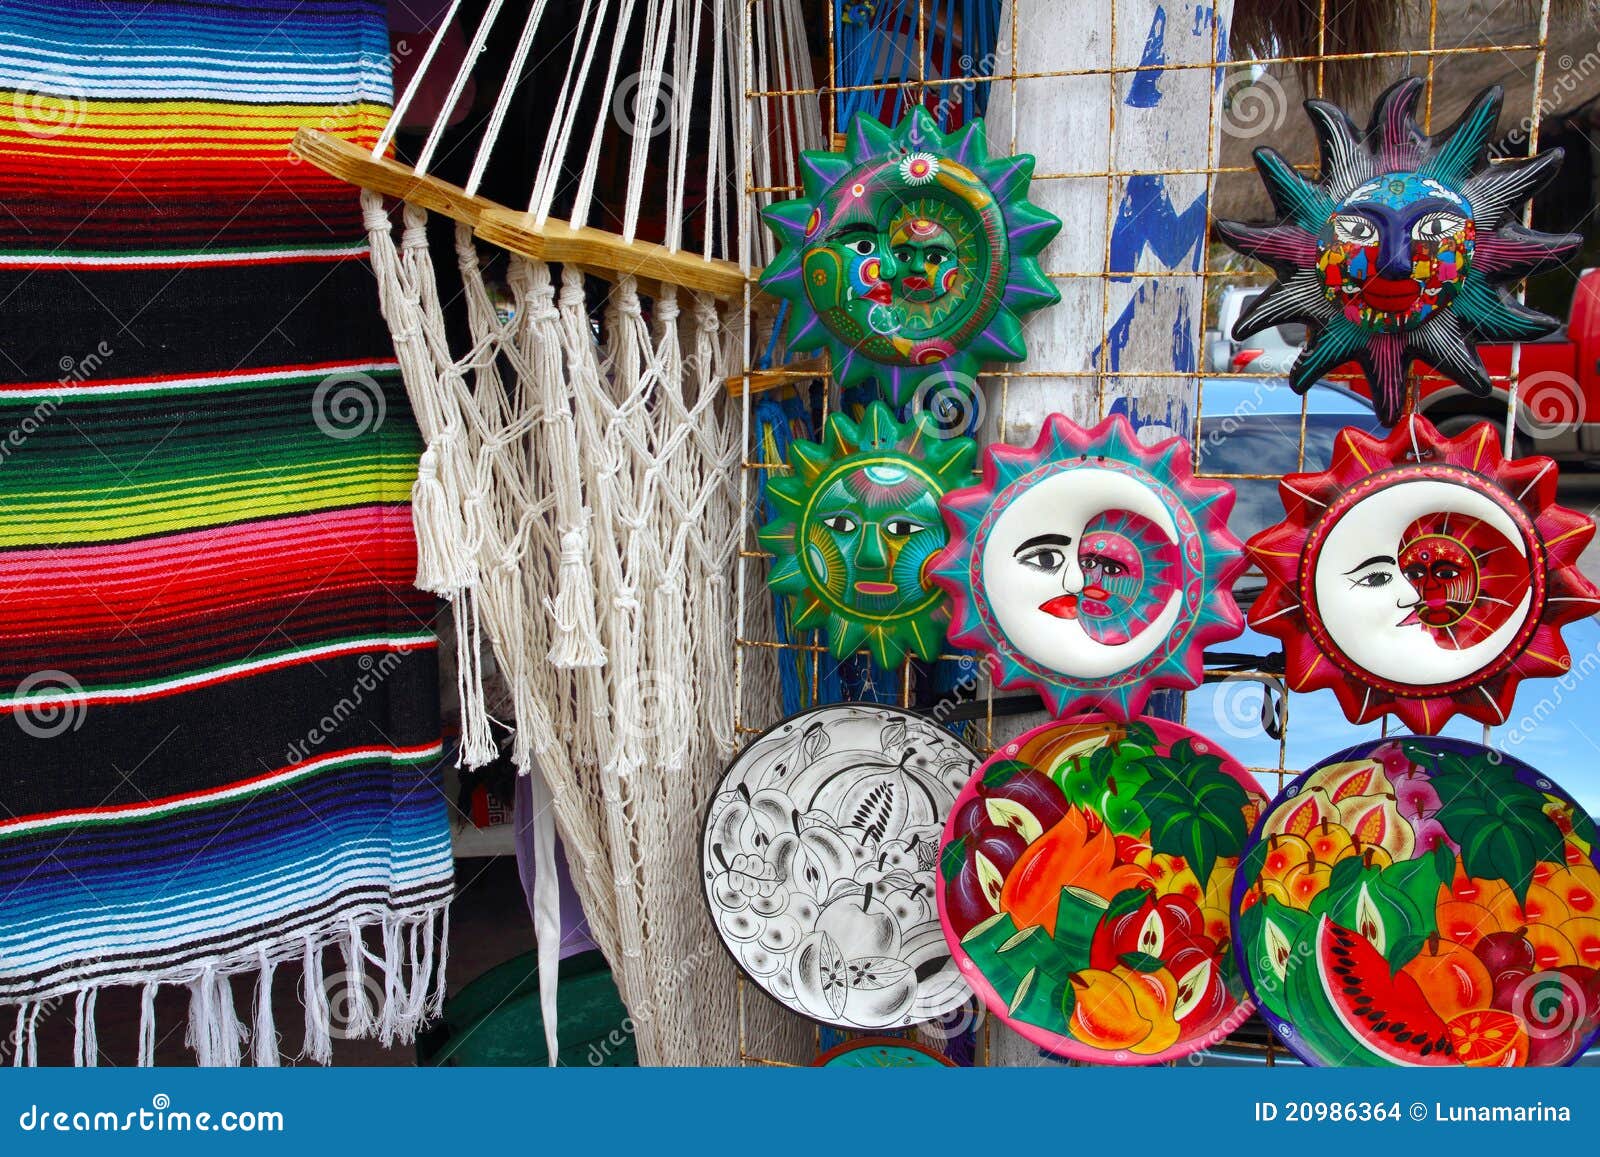 mexican-handcrafts-hammock-serape-ceramics-20986364.jpg